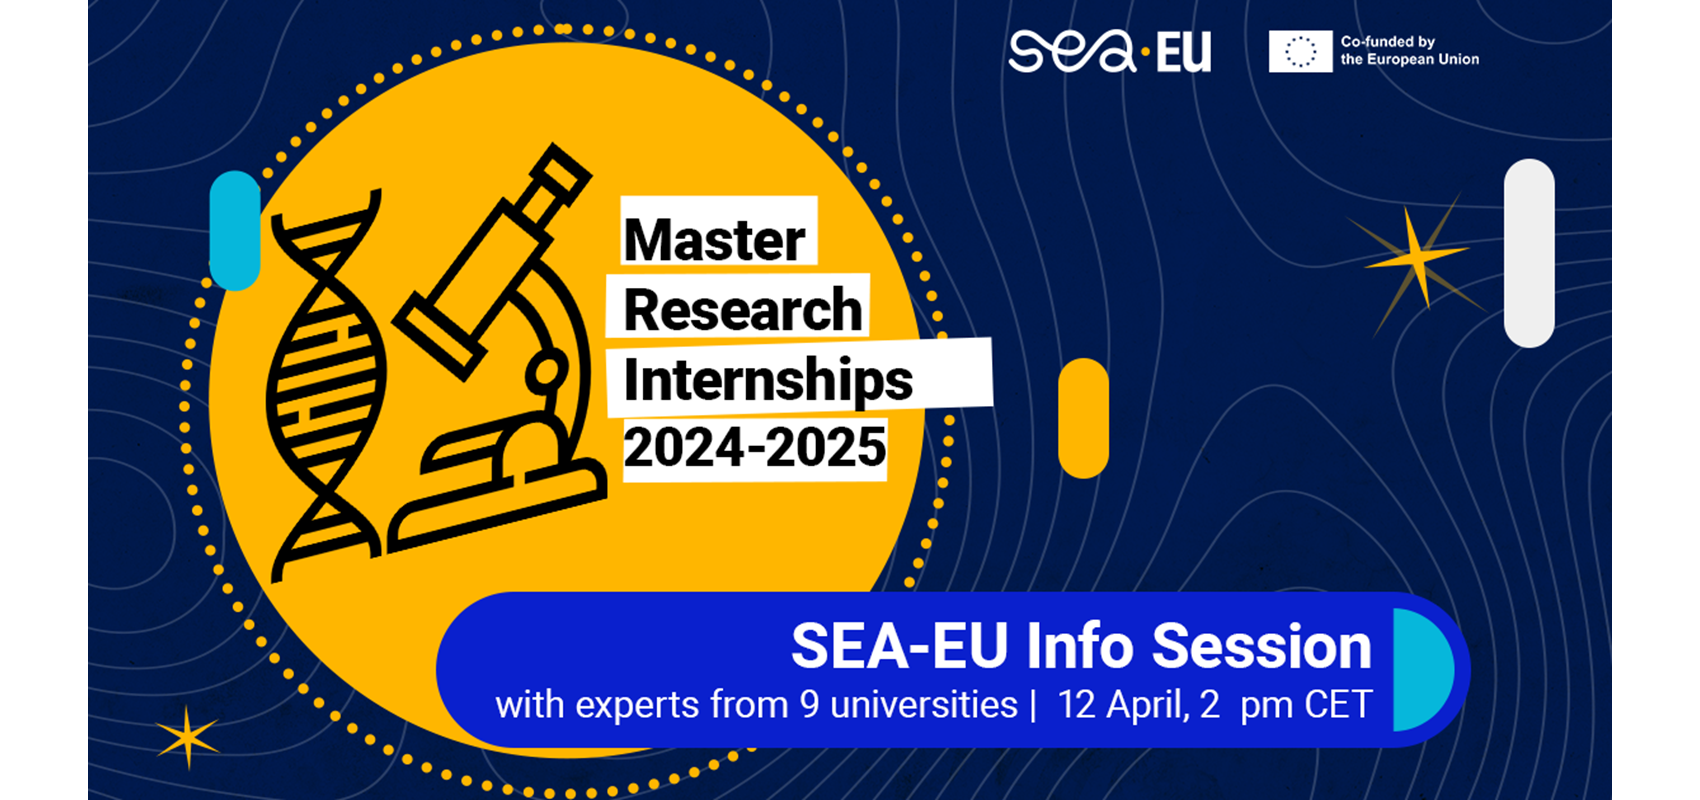 Nastavnici, pridružite se info sesiji o SEA-EU istraživačkim diplomskim praksama!